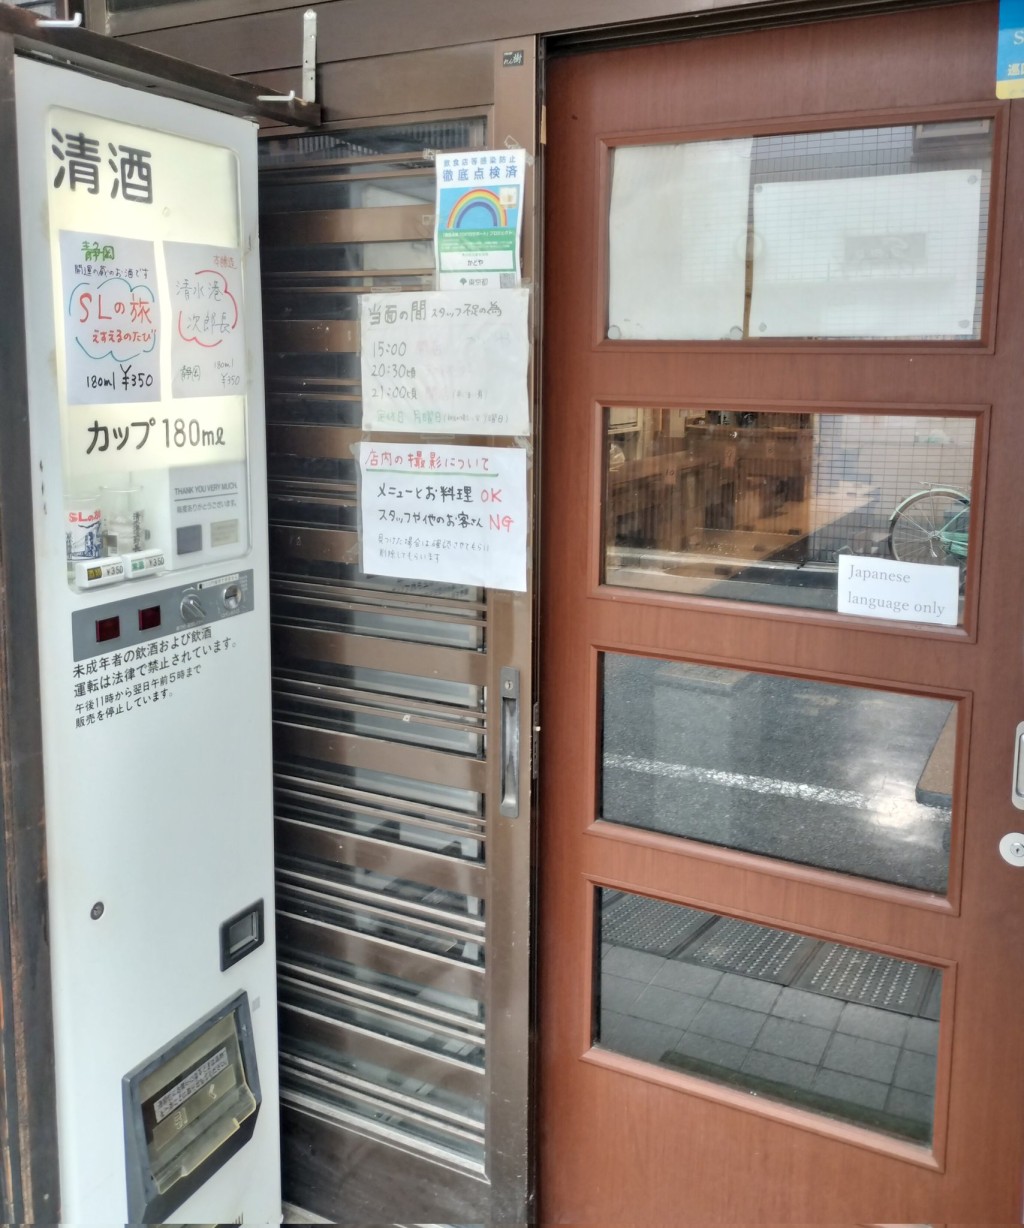 东京居酒屋「かどや」（Kadoya）入口贴出多张告示。 X